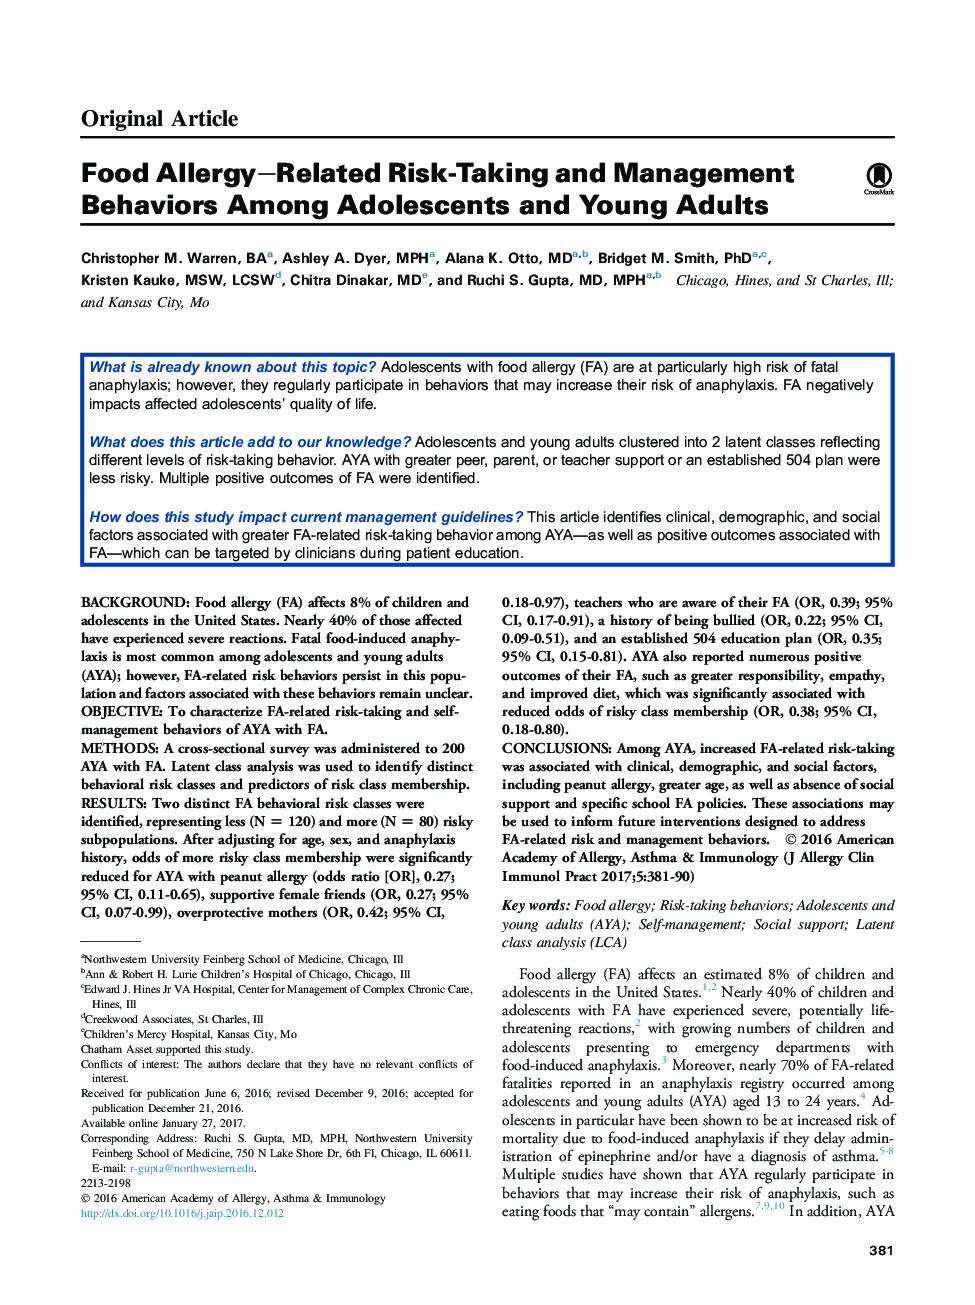 رفتارهای ریسک پذیری و رفتارهای مرتبط با آلرژی غذایی در میان نوجوانان و نوجوانان 